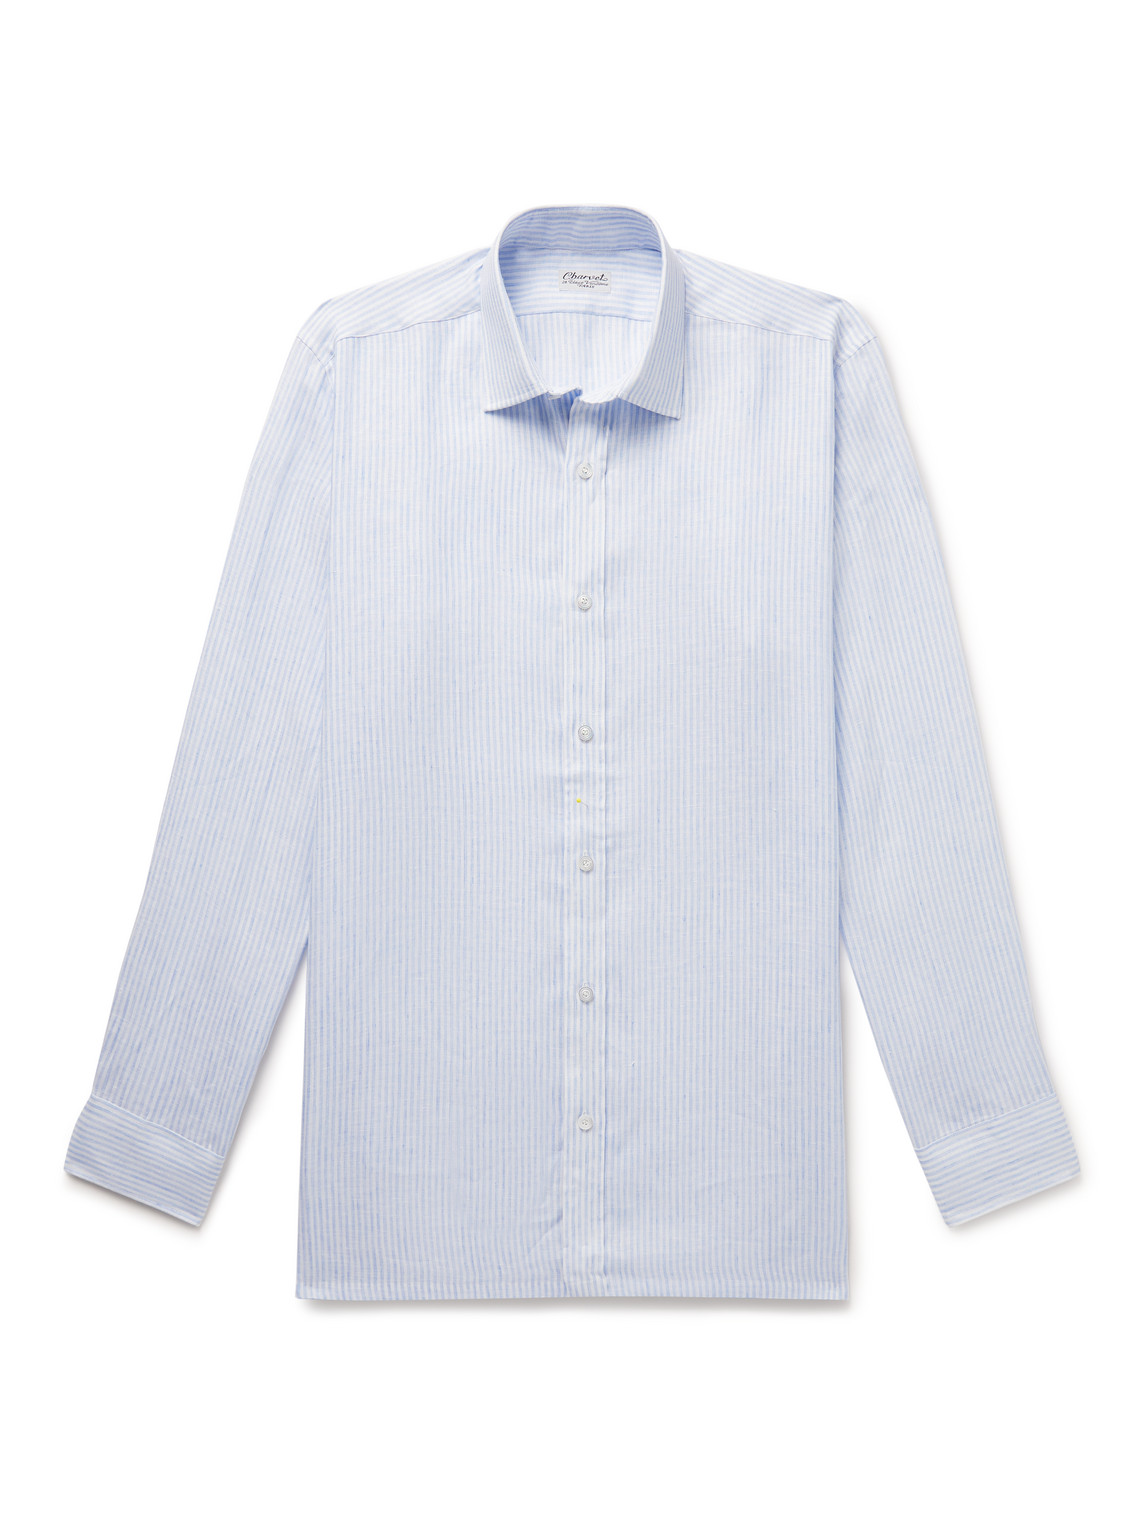 Charvet Striped Linen Shirt In Blue